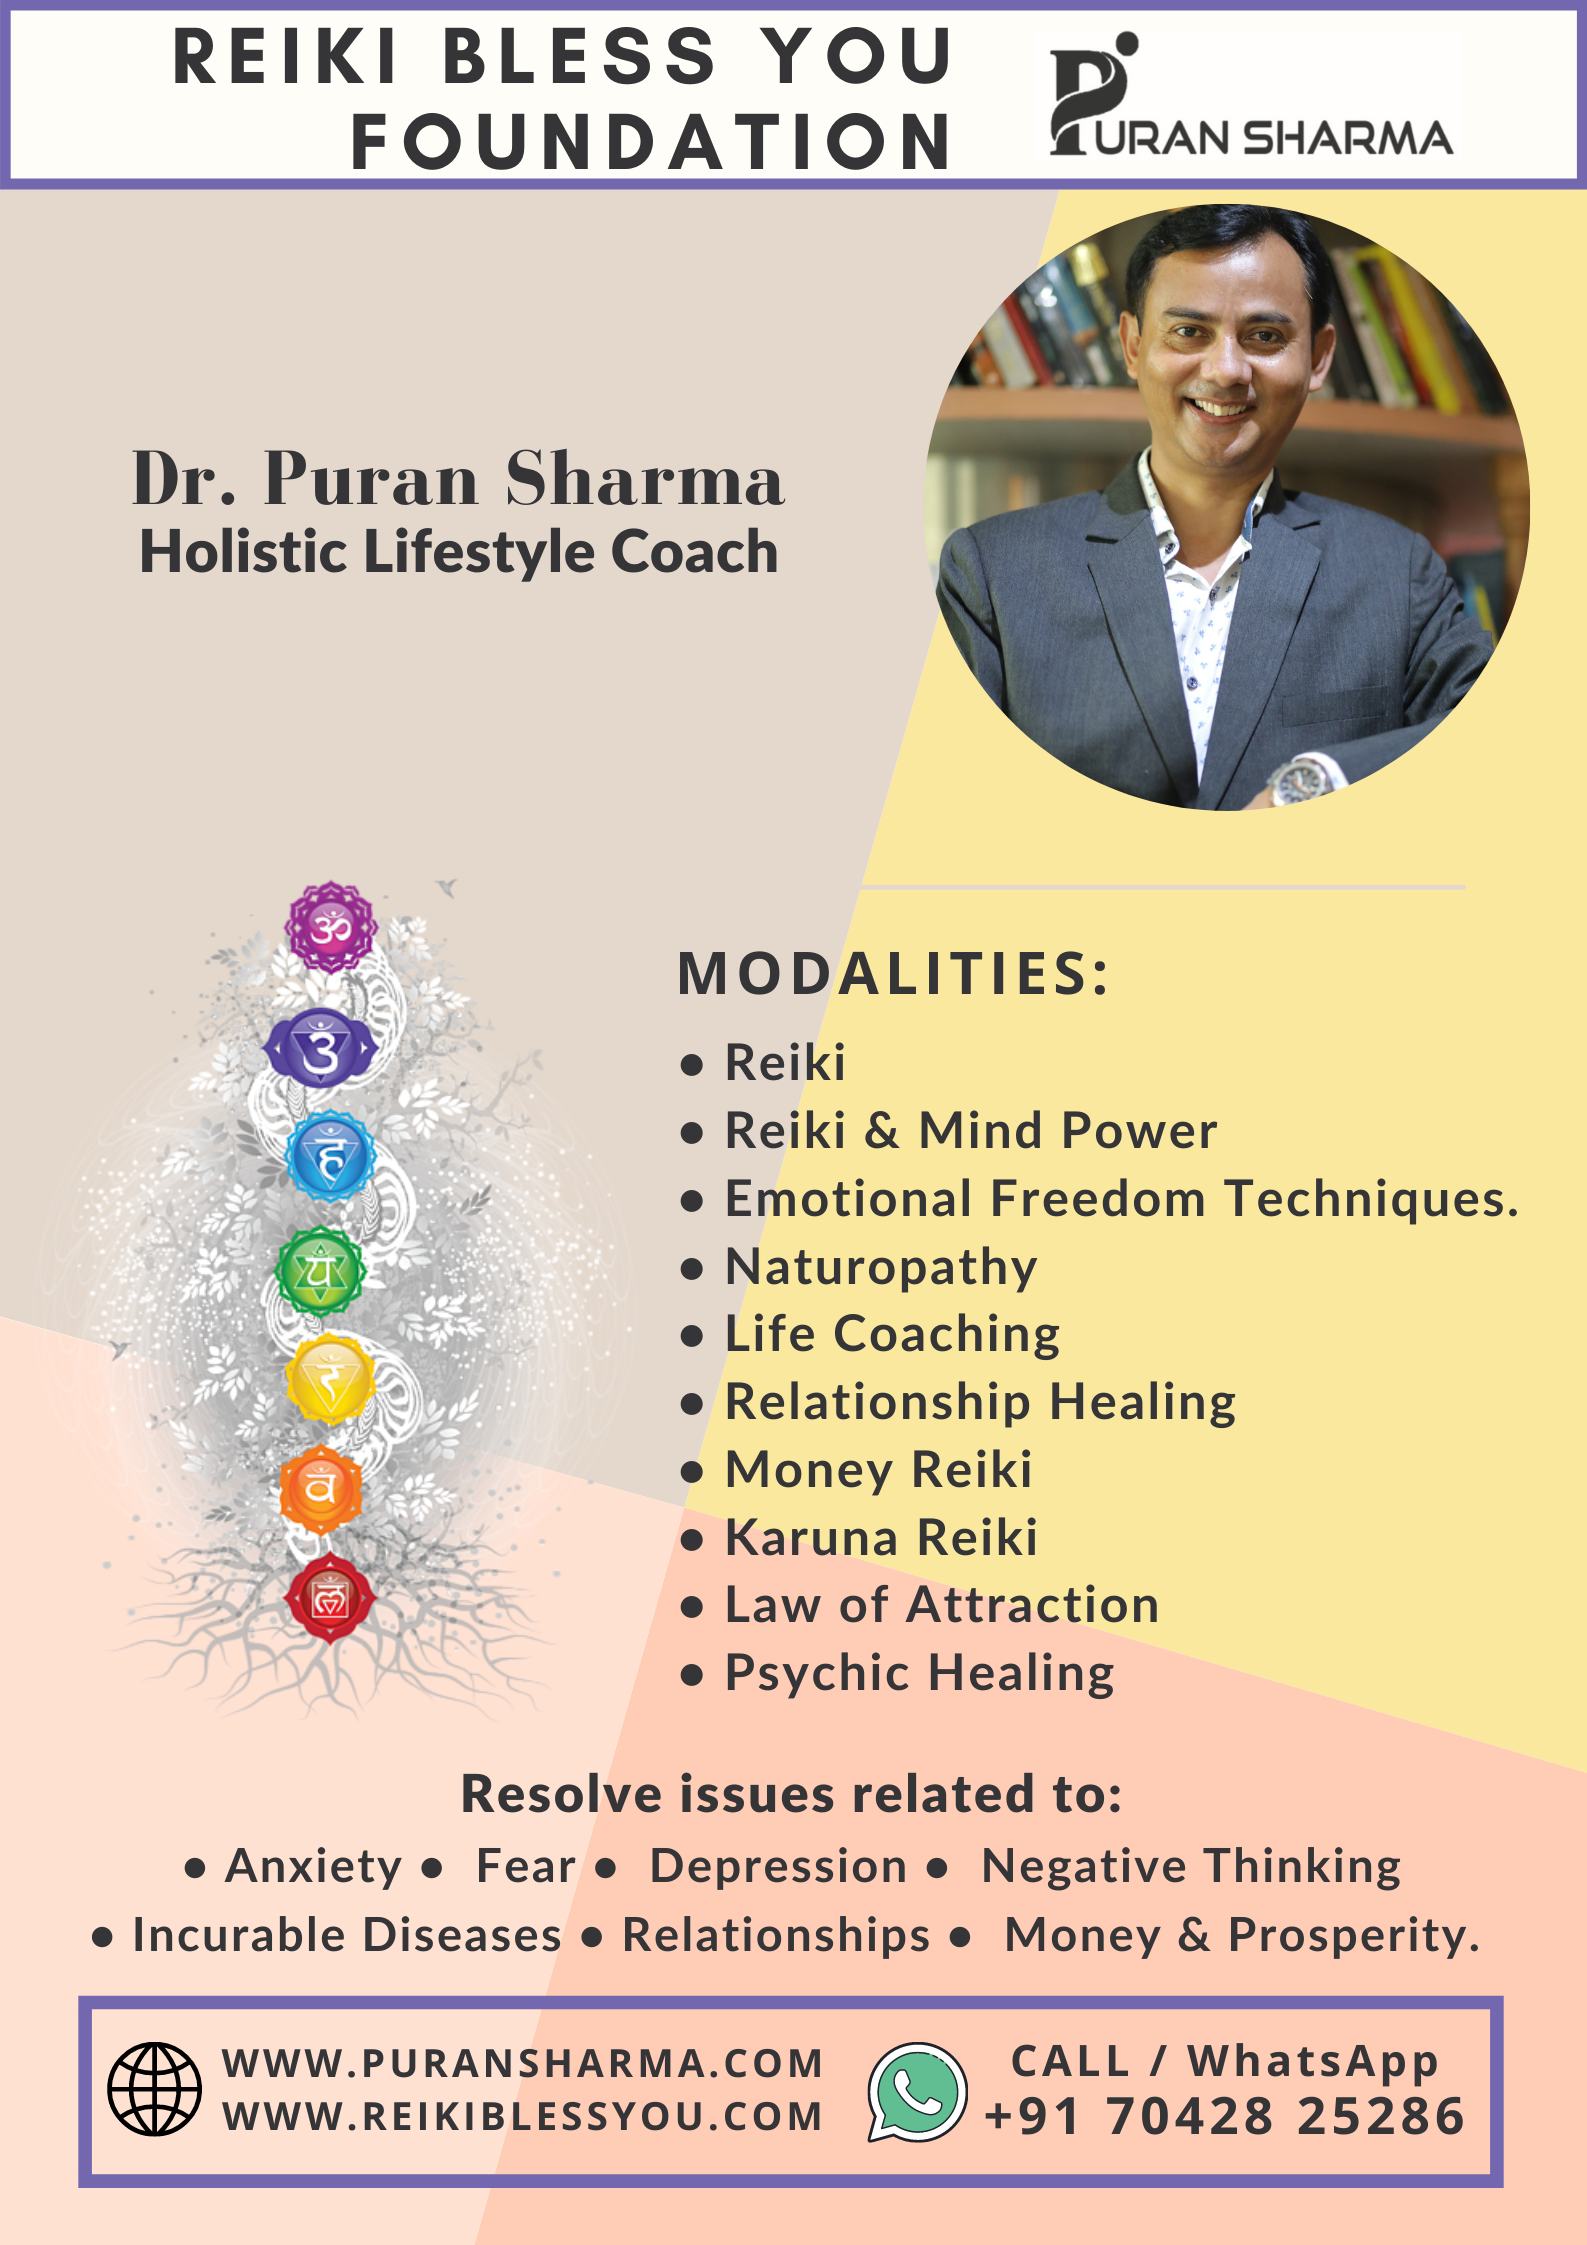 Dr. Puran Sharma - Reiki Bless You Foundation - Dubai